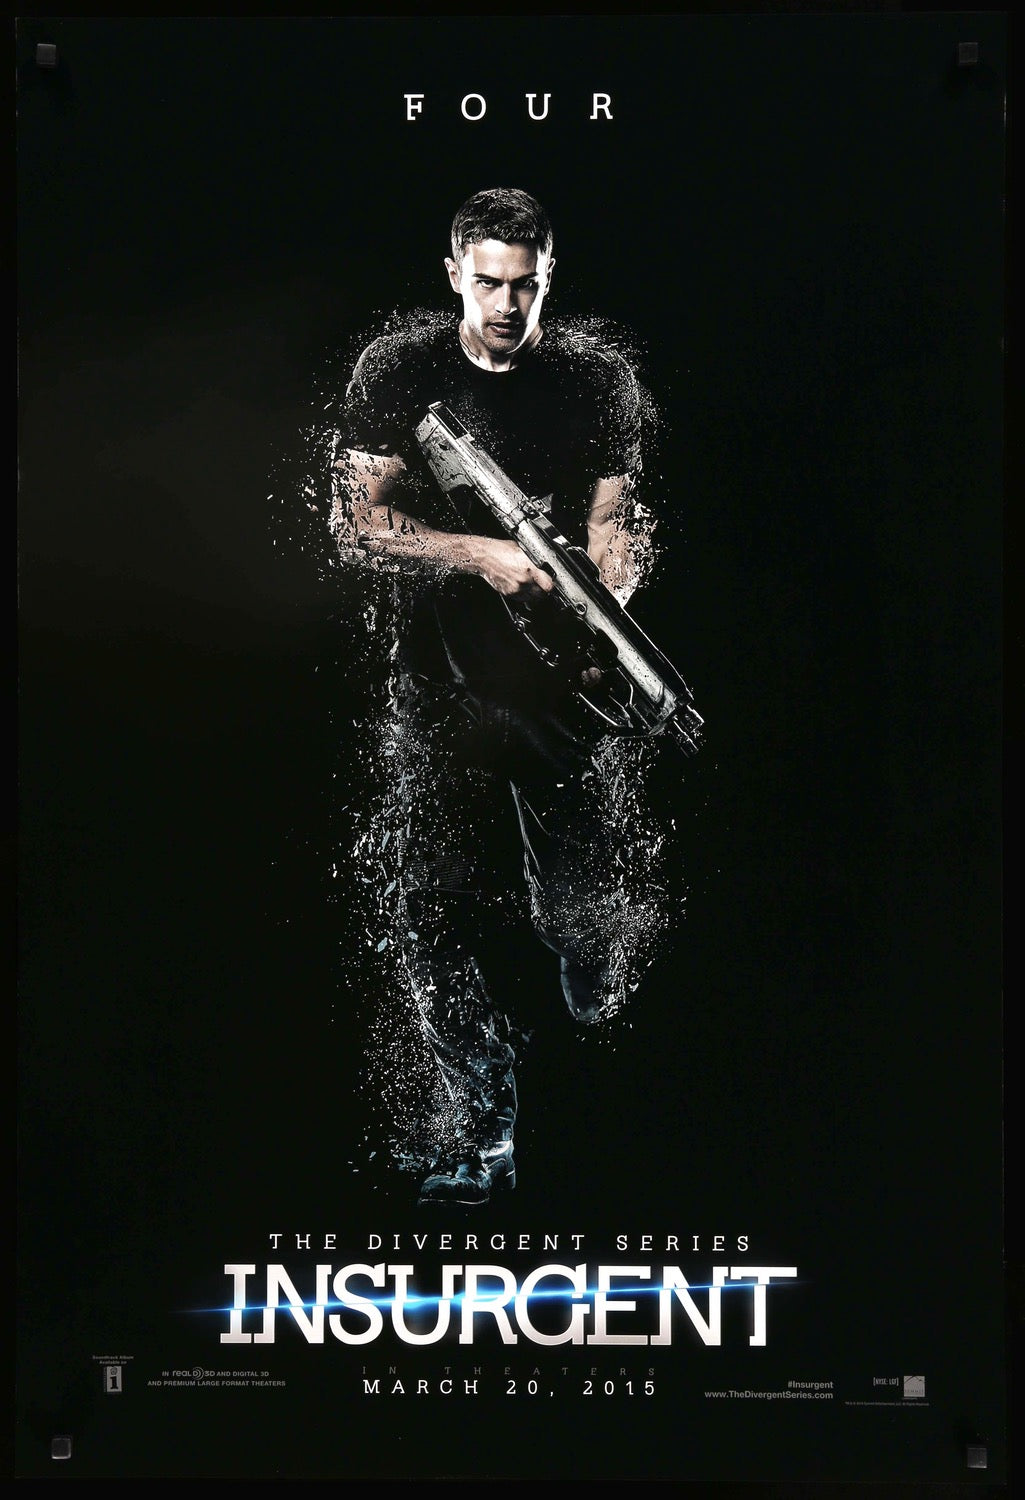 Insurgent (2015) original movie poster for sale at Original Film Art